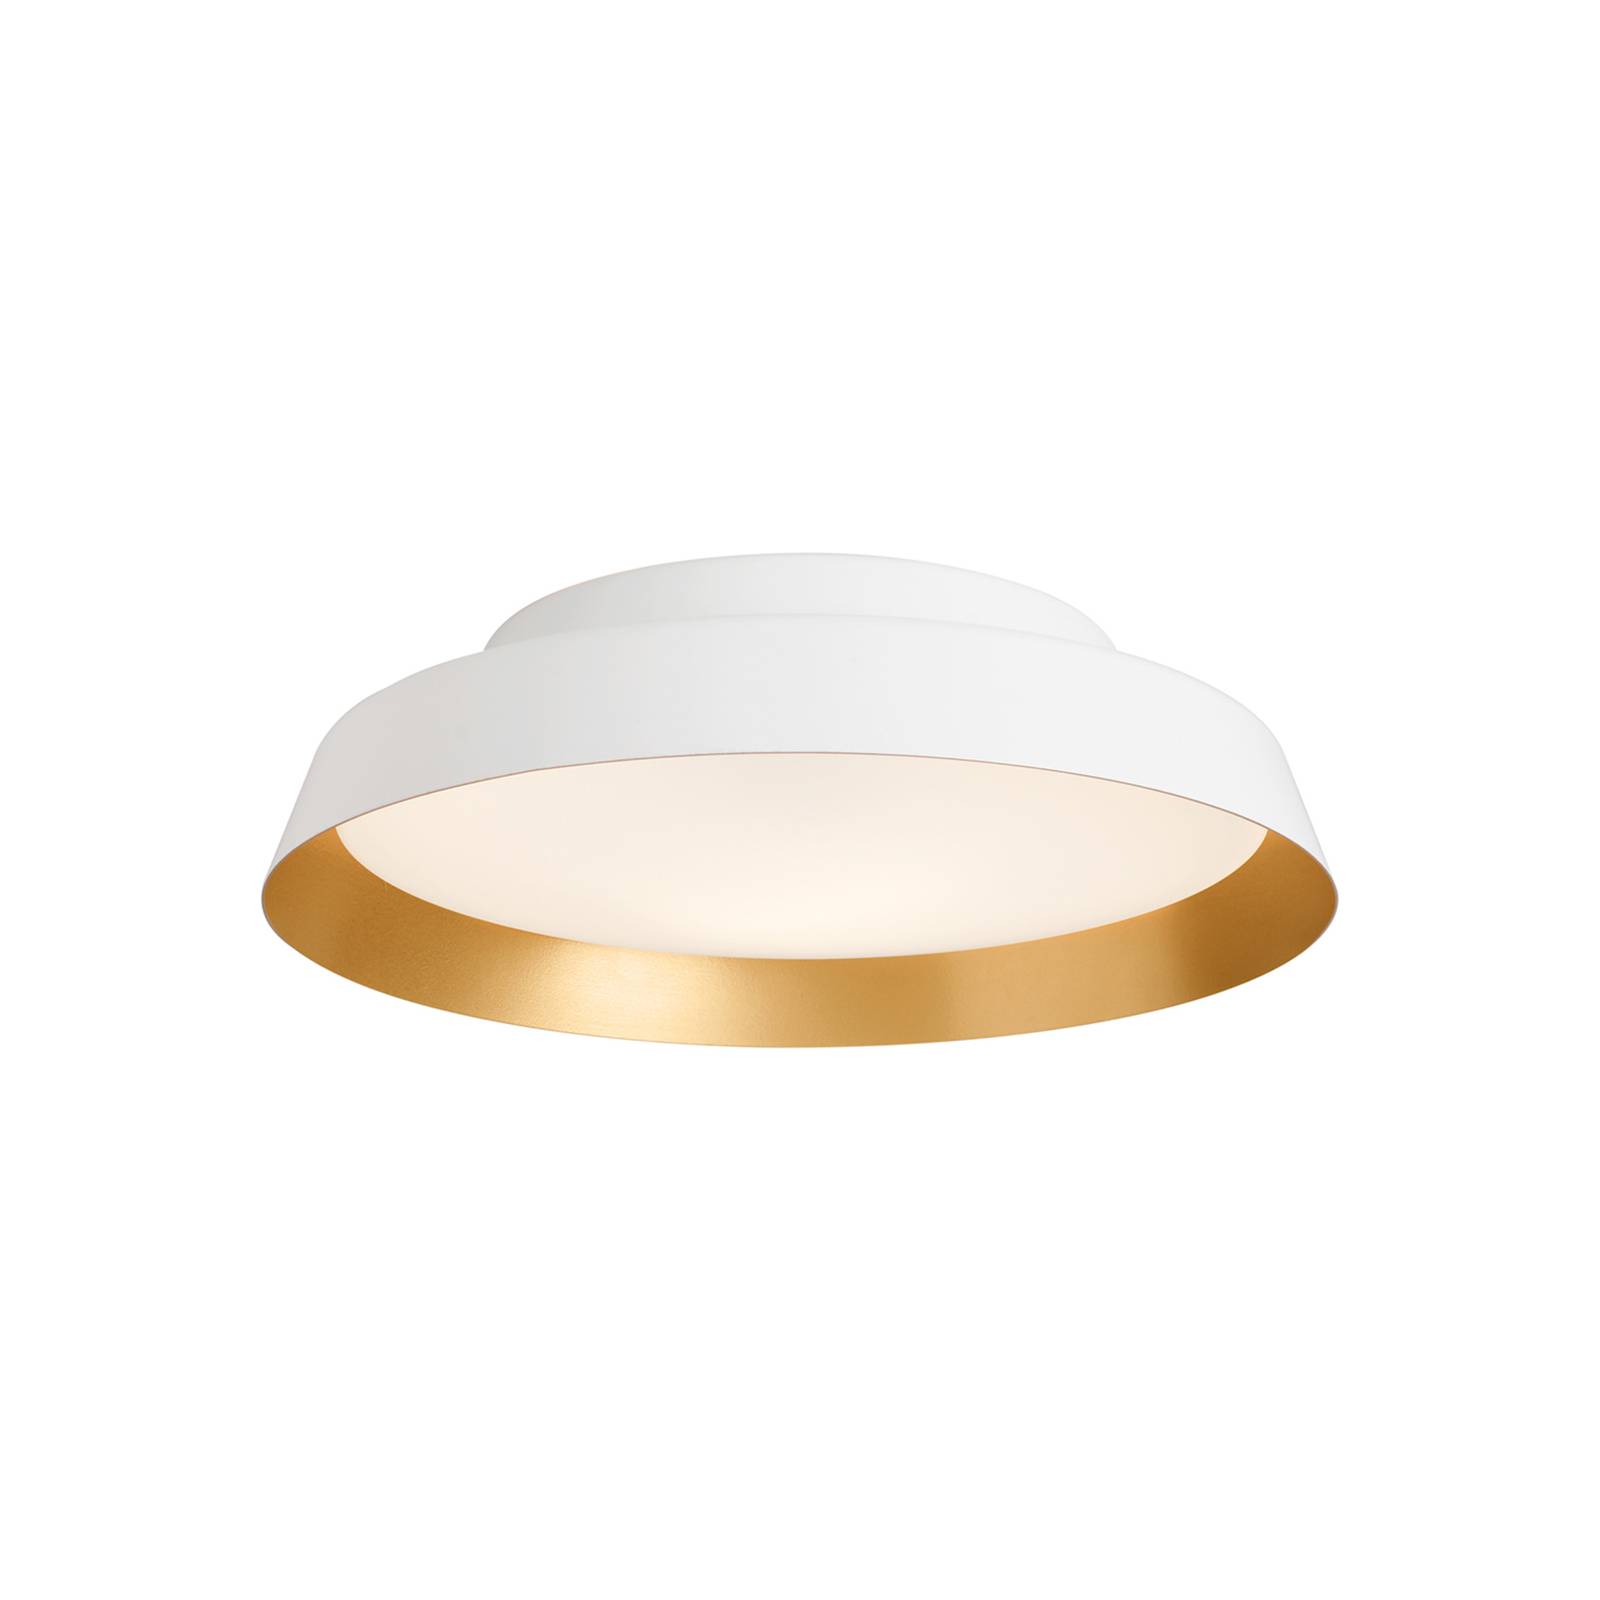 LED mennyezeti világítás Boop! Ø 37 cm fehér/arany